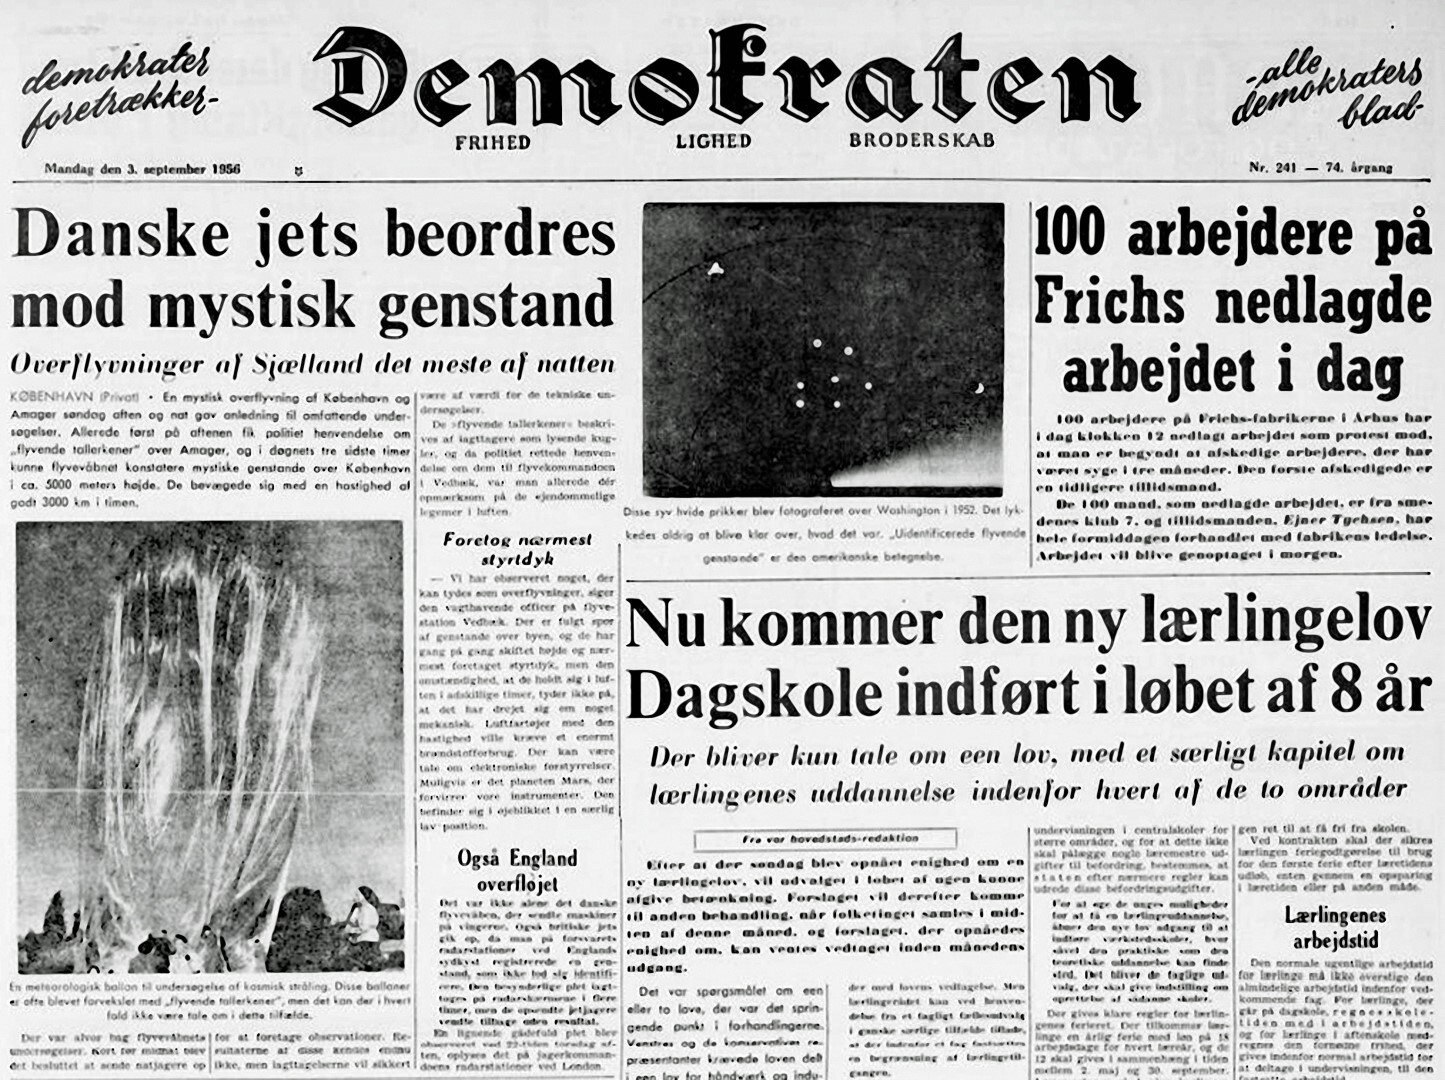 09-demokraten-1956-09-03-danske-jets-beordres-mod-mystisk-genstand-res-300-large